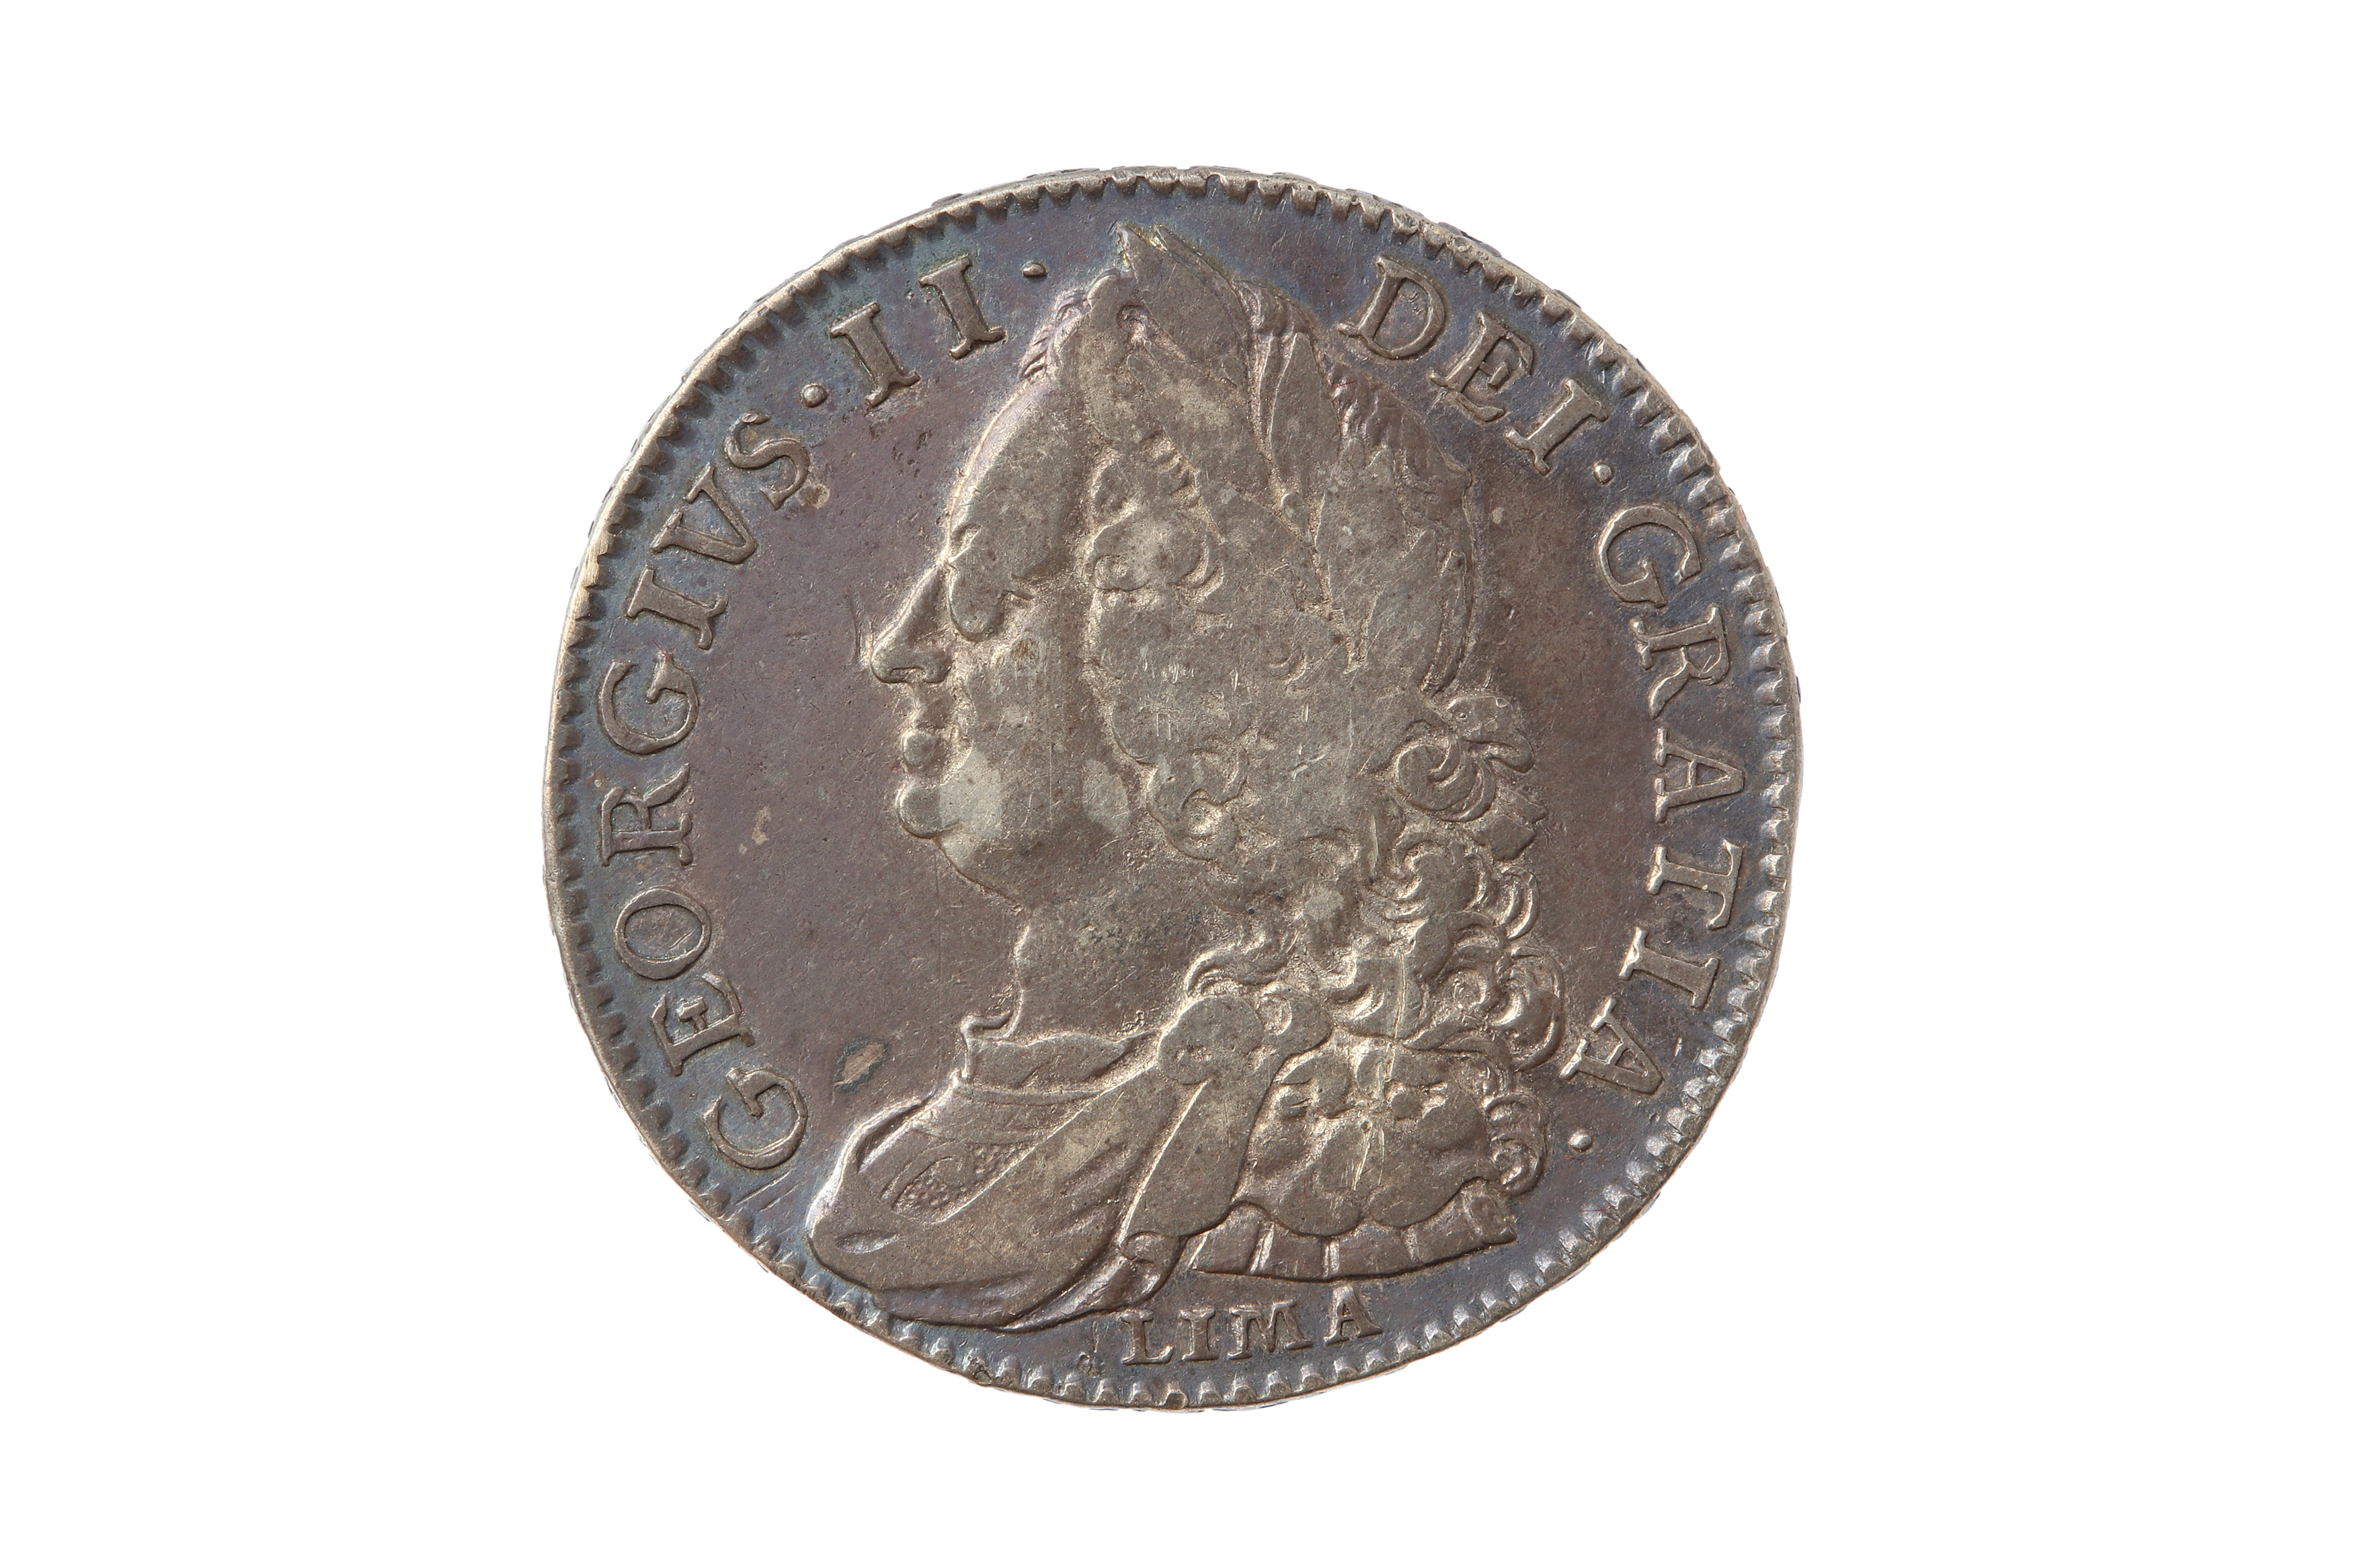 GEORGE II (1727 - 1760), 1746 LIMA HALFCROWN.